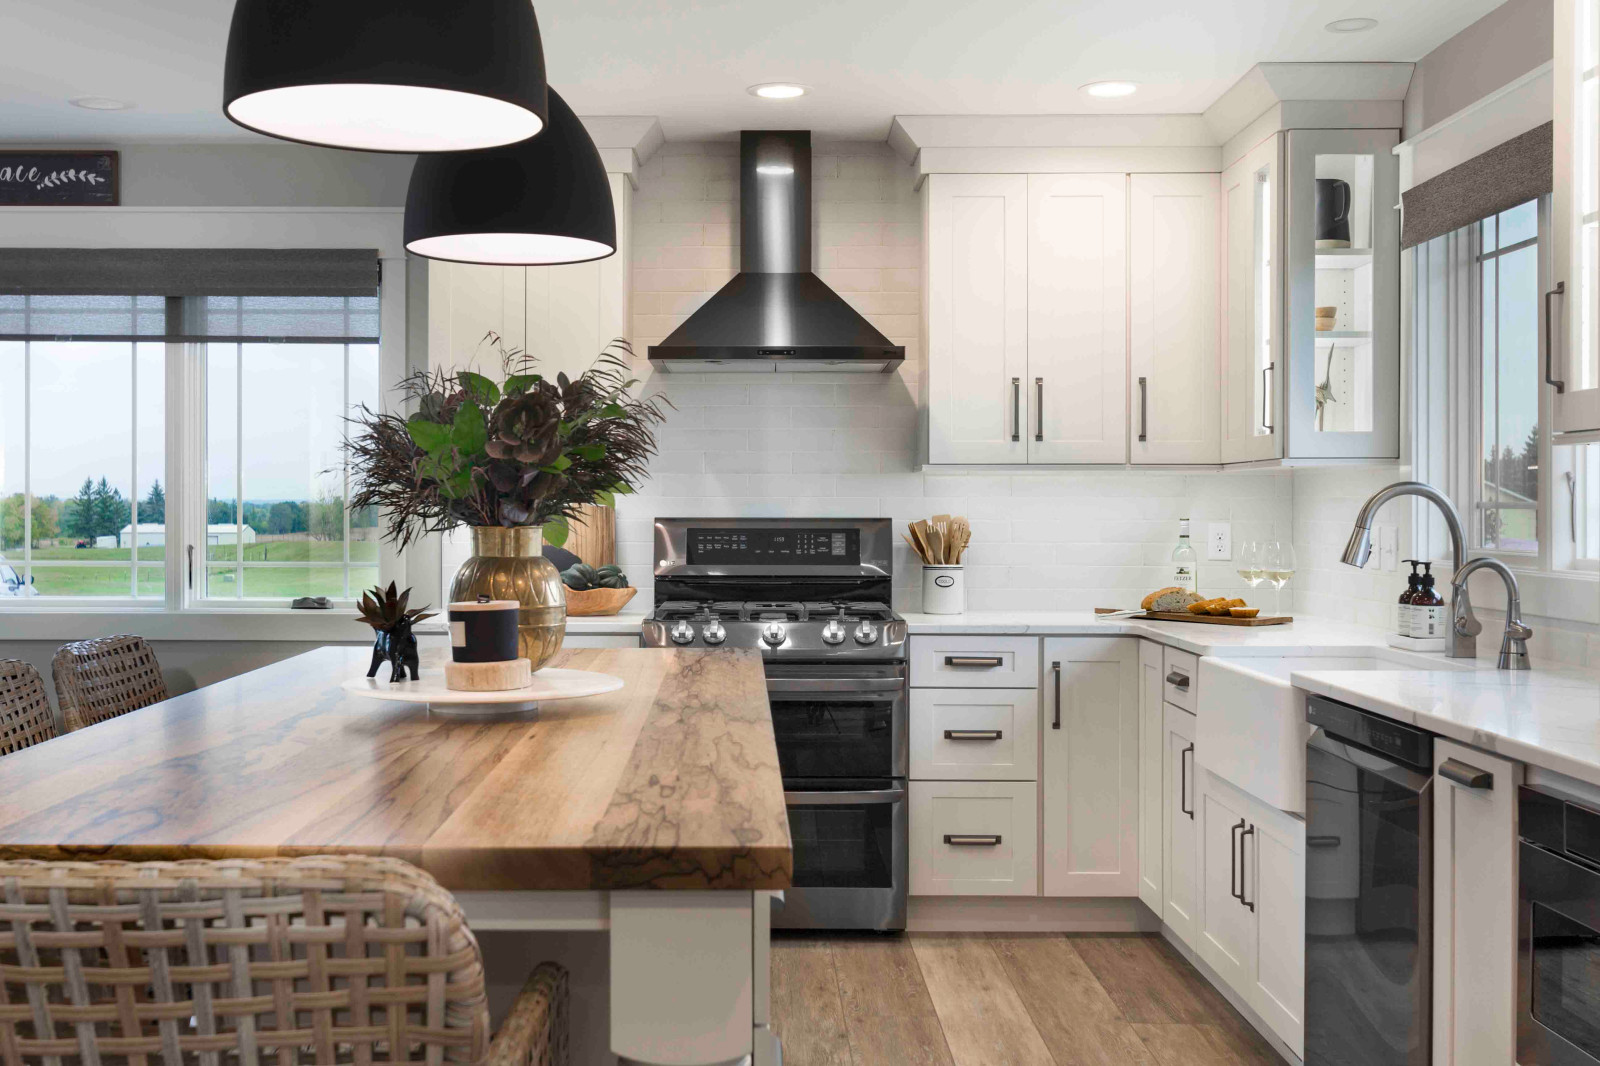 kitchen design with white appliances photos